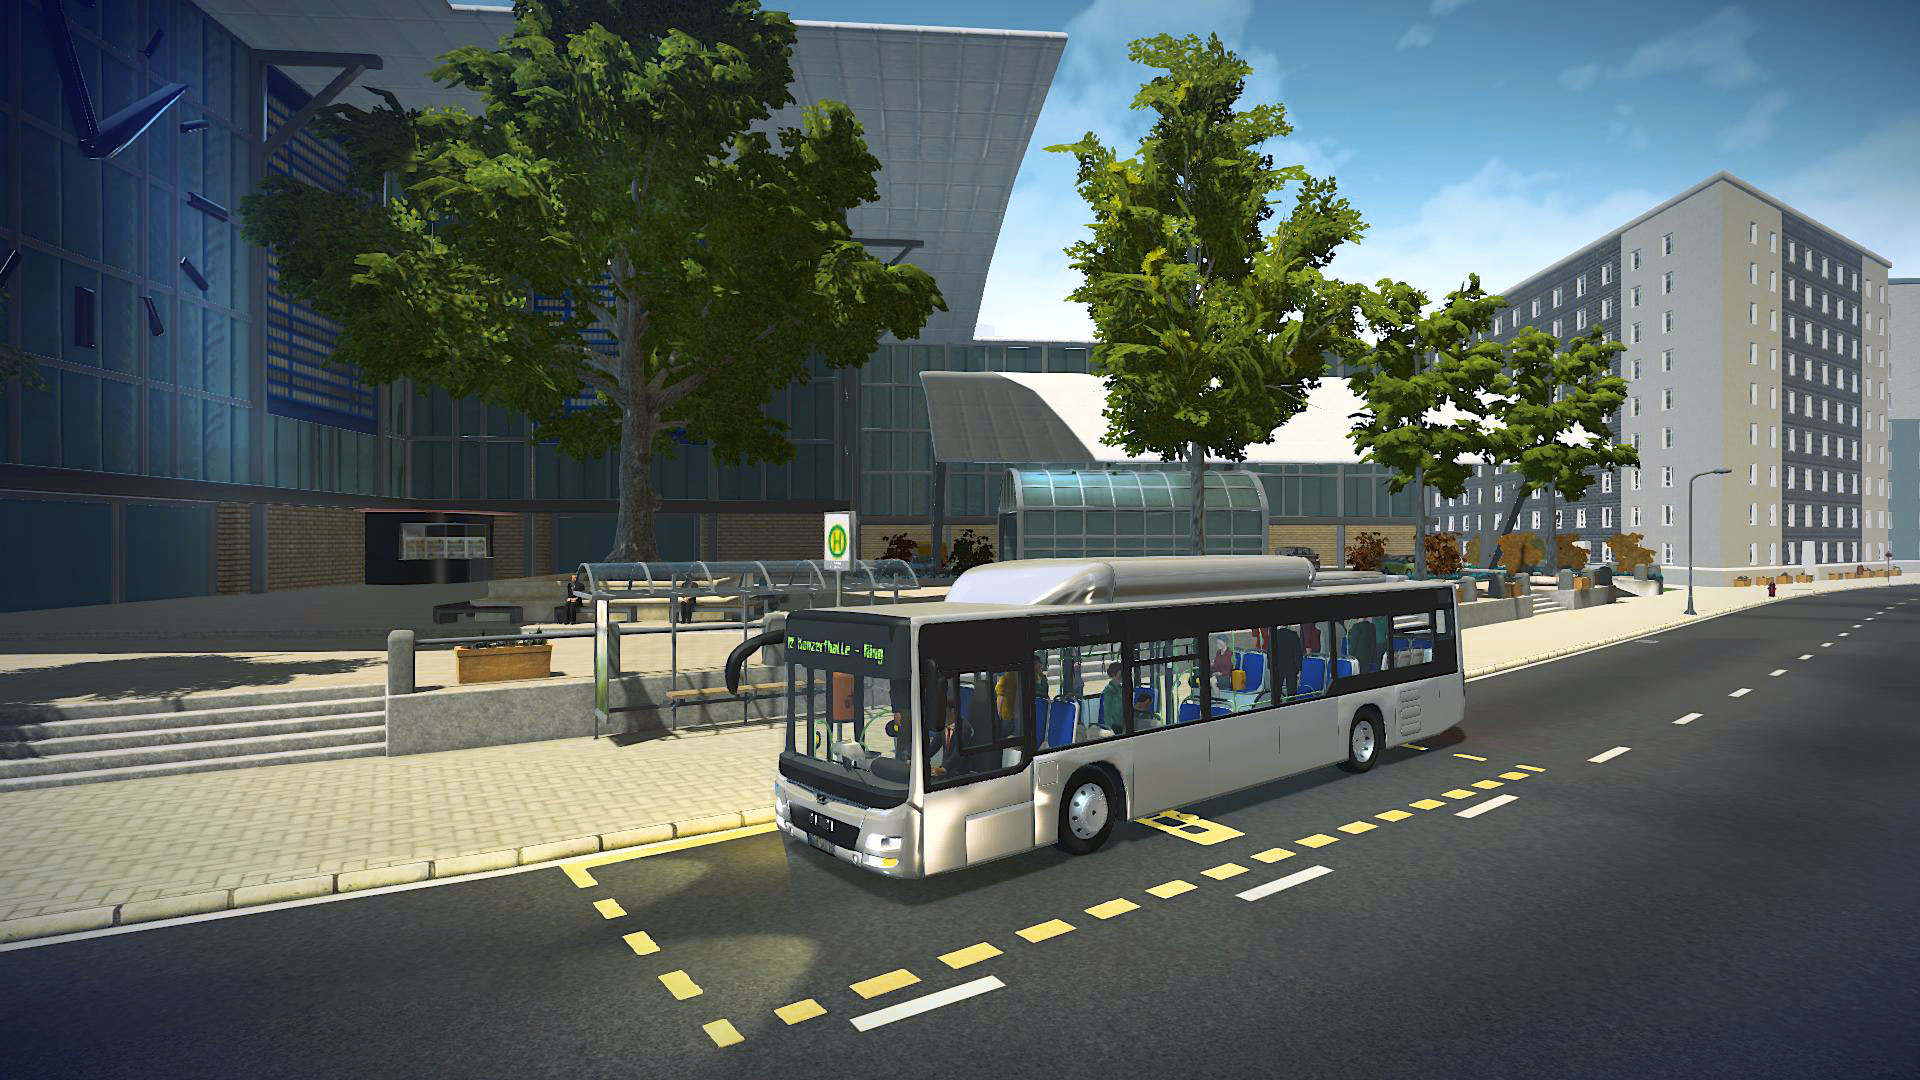 Simulador de direção de ônibus turístico e modernos jogos de simulador de  ônibus de transportes públicos de transporte público